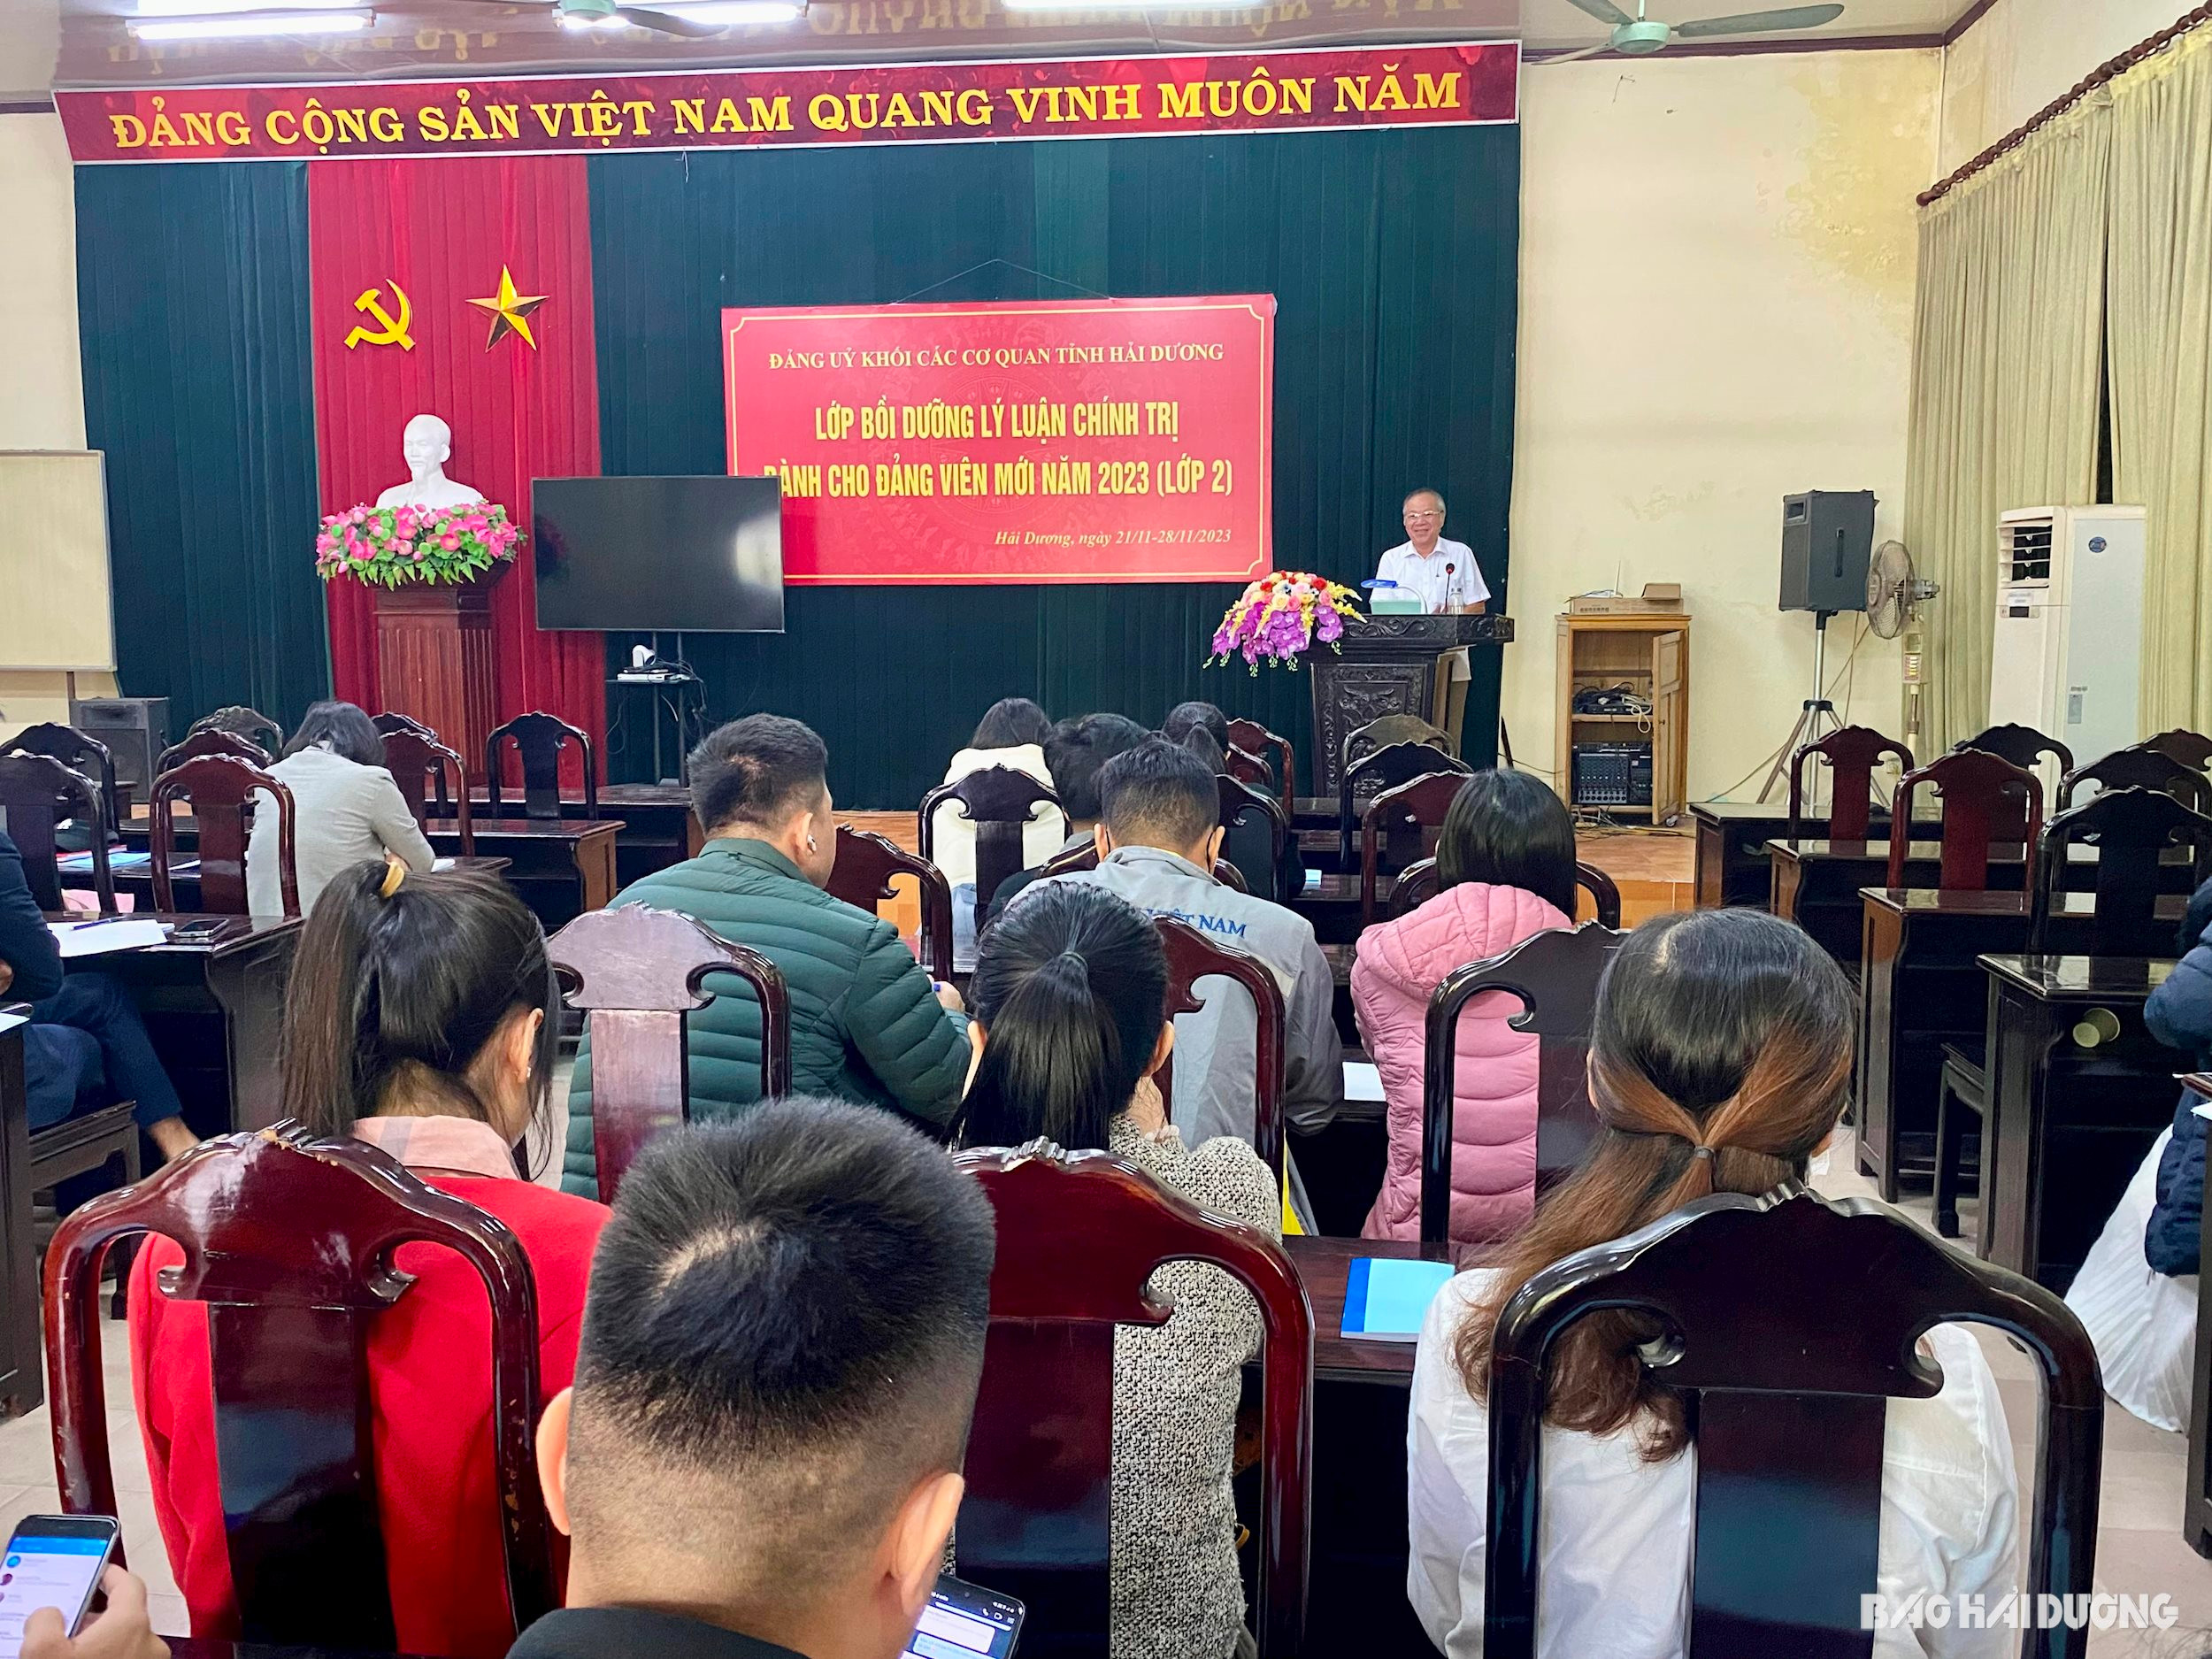 Đảng ủy Khối các cơ quan tỉnh Hải Dương bồi dưỡng nhận thức về Đảng cho 70 đảng viên mới